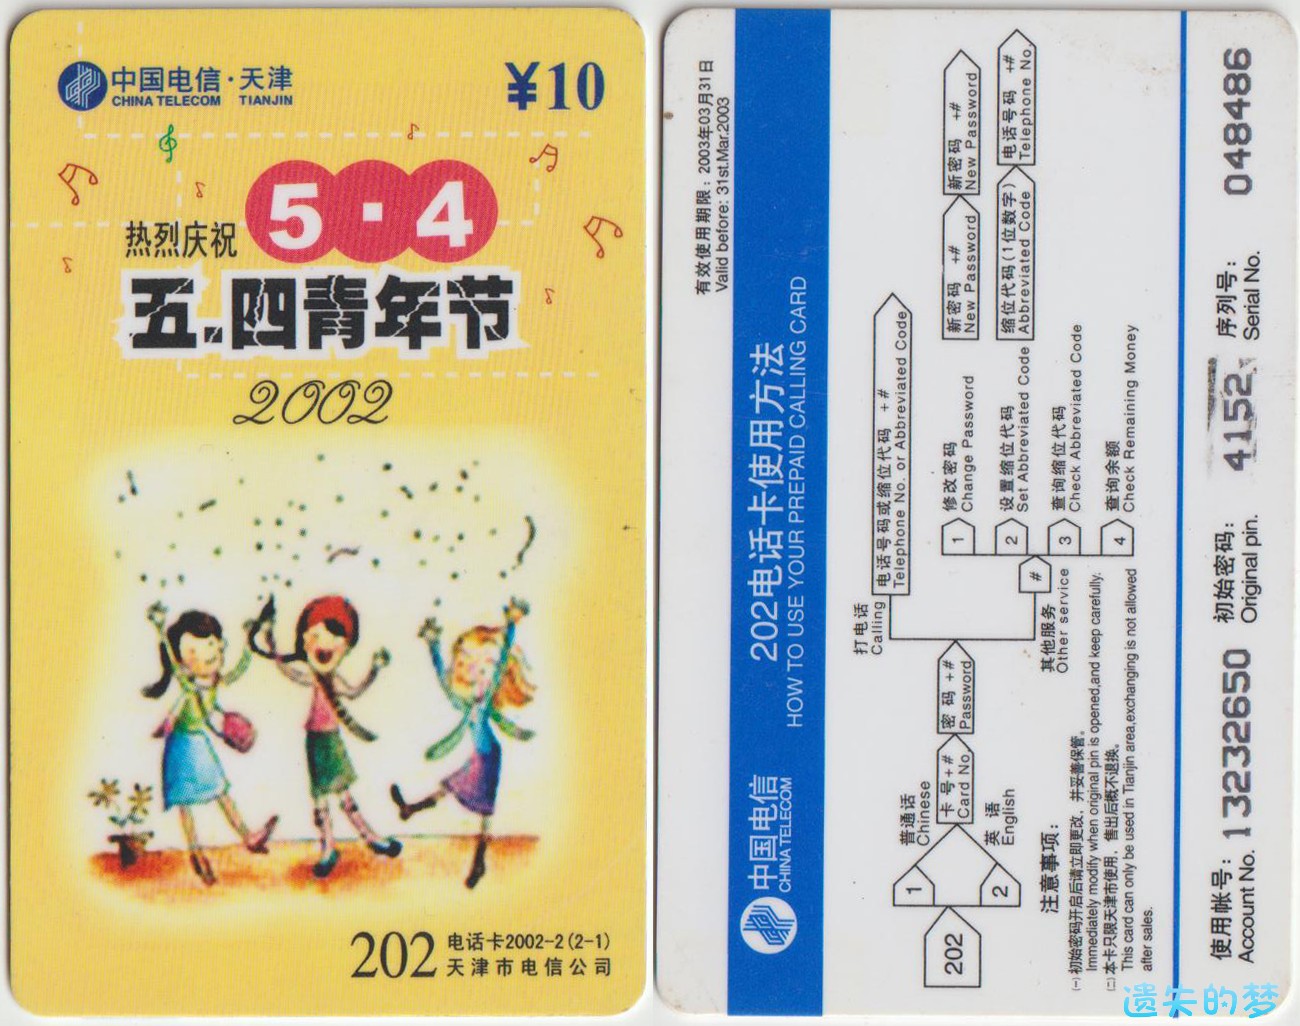 202电话卡2002-2(2-1).jpg